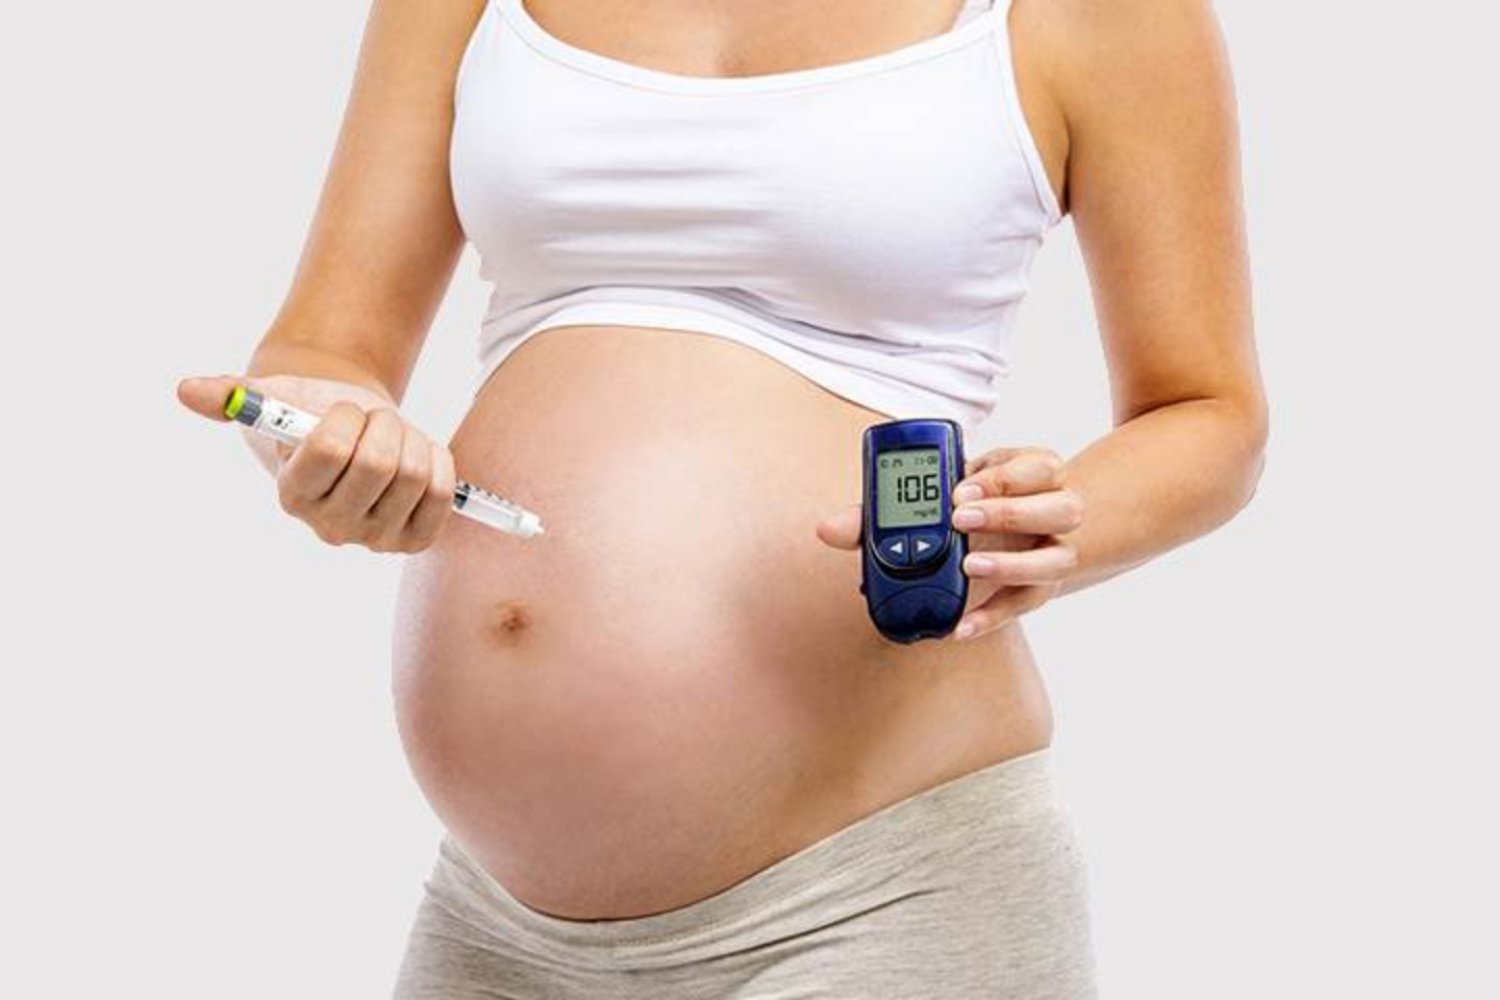 Chỉ số tiểu đường thai kỳ như thế nào là bình thường? - ảnh 2